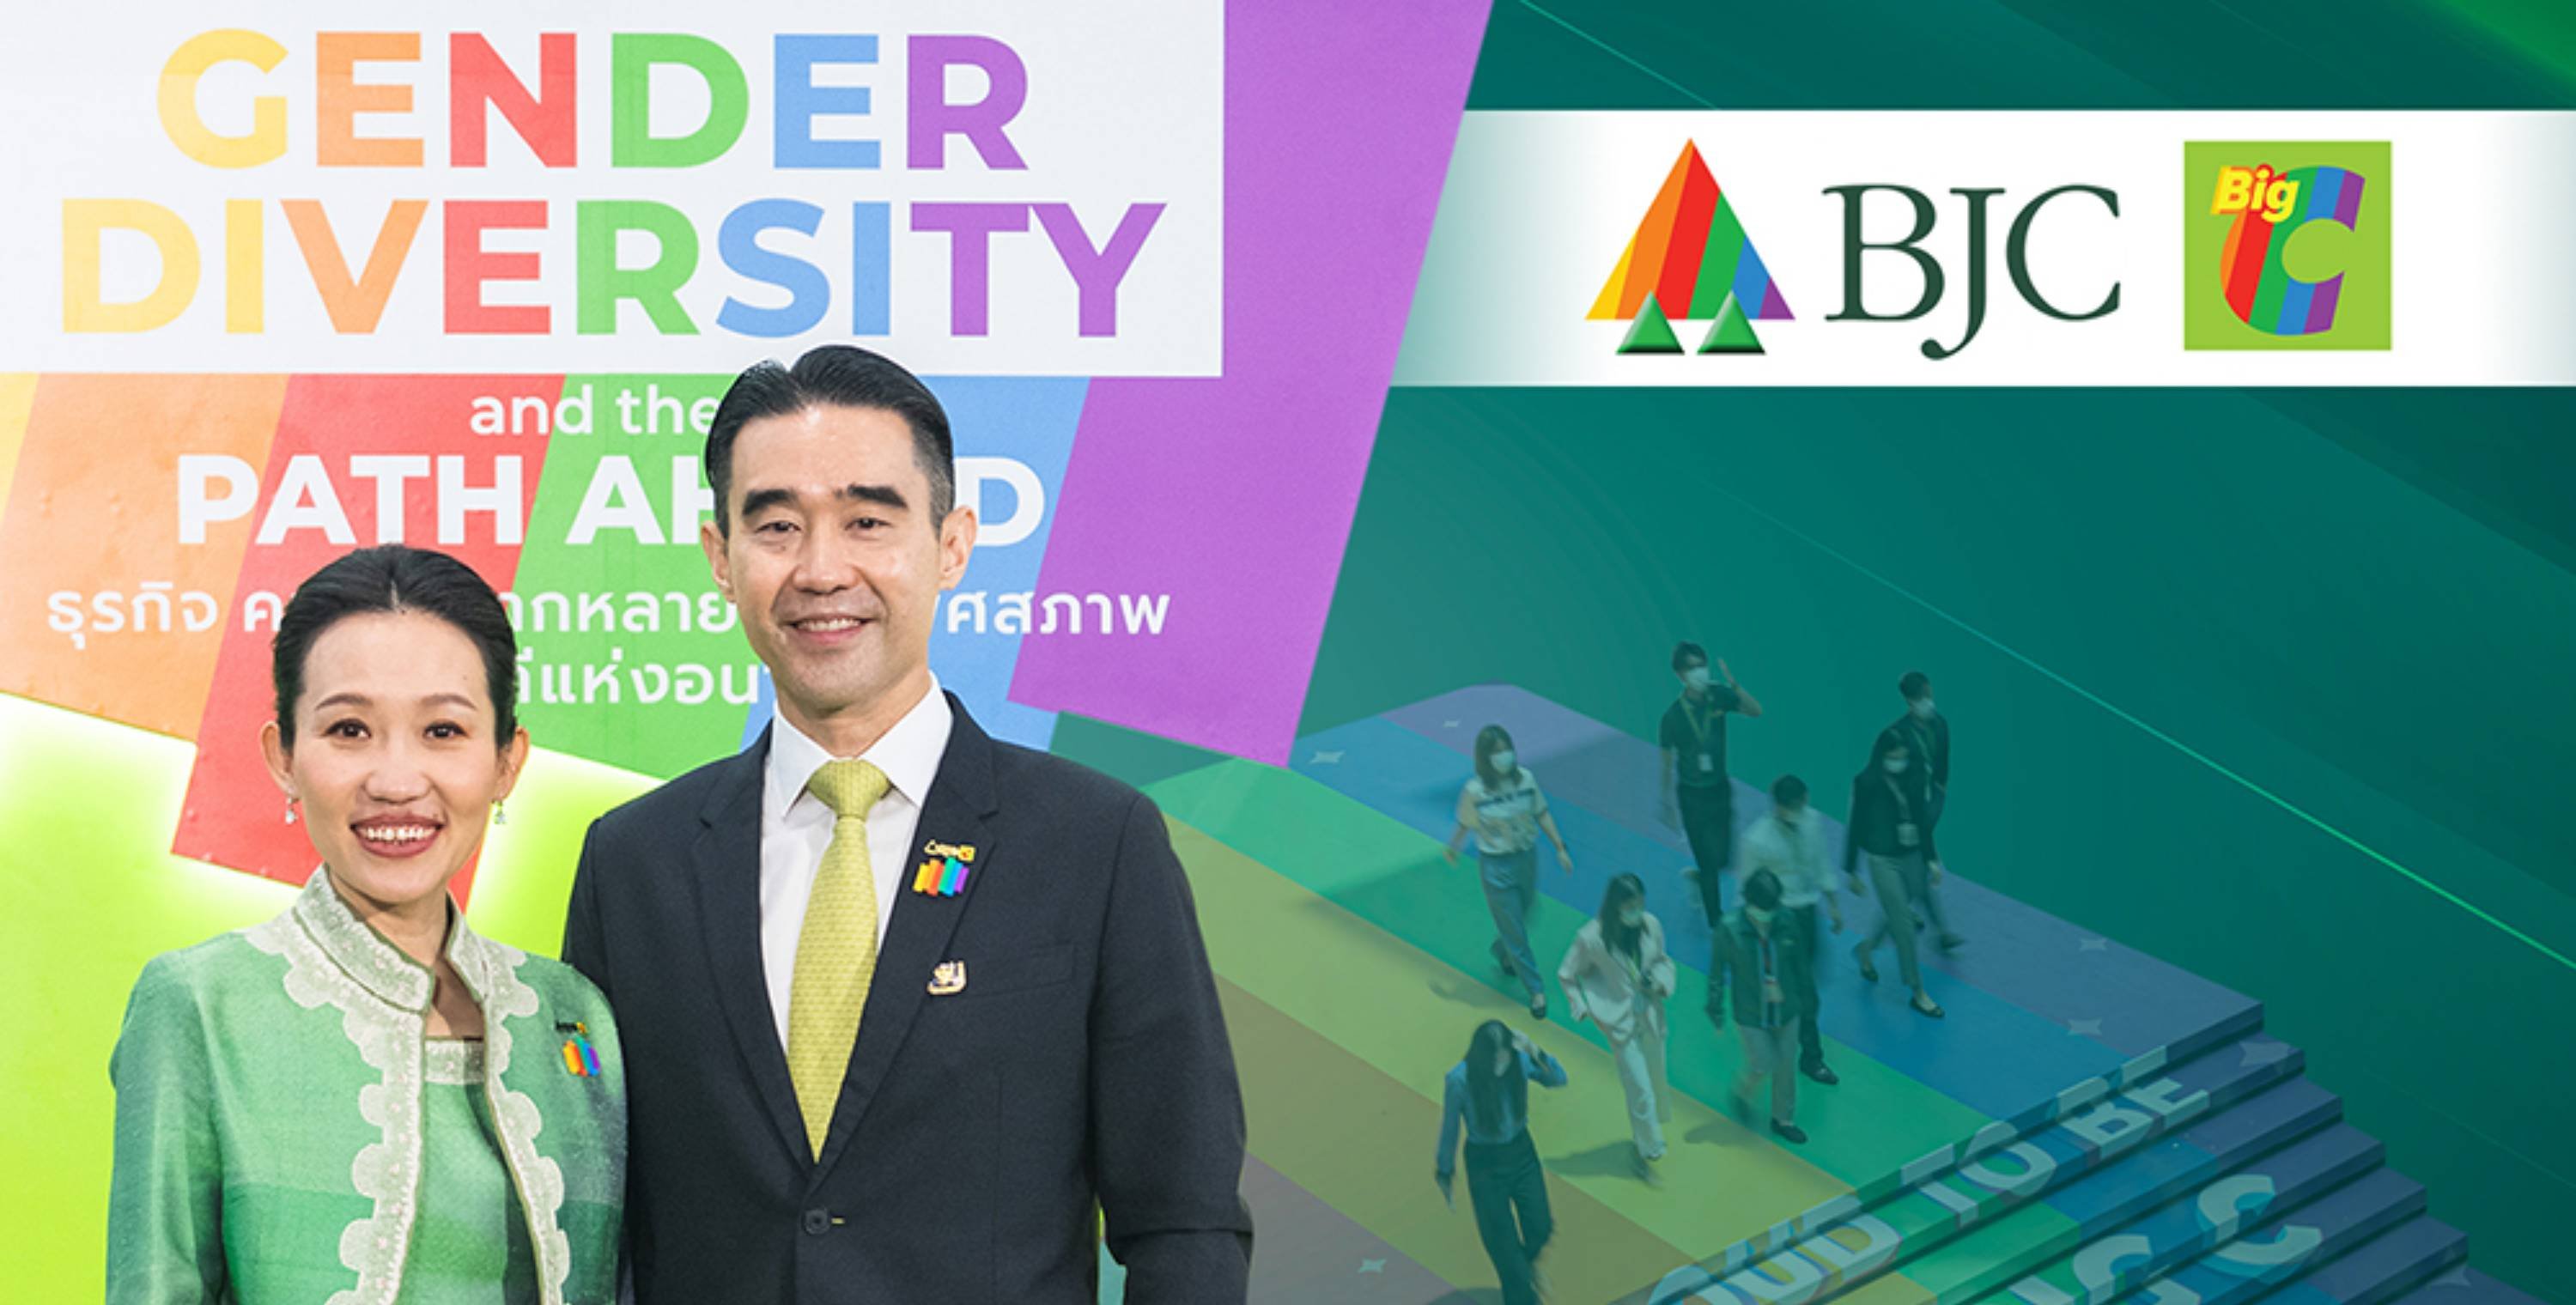 บีเจซี ขึ้นแท่นผู้นำของโลกและที่ 1 ของประเทศไทย  ในการสนับสนุนความเสมอภาคทางเพศ